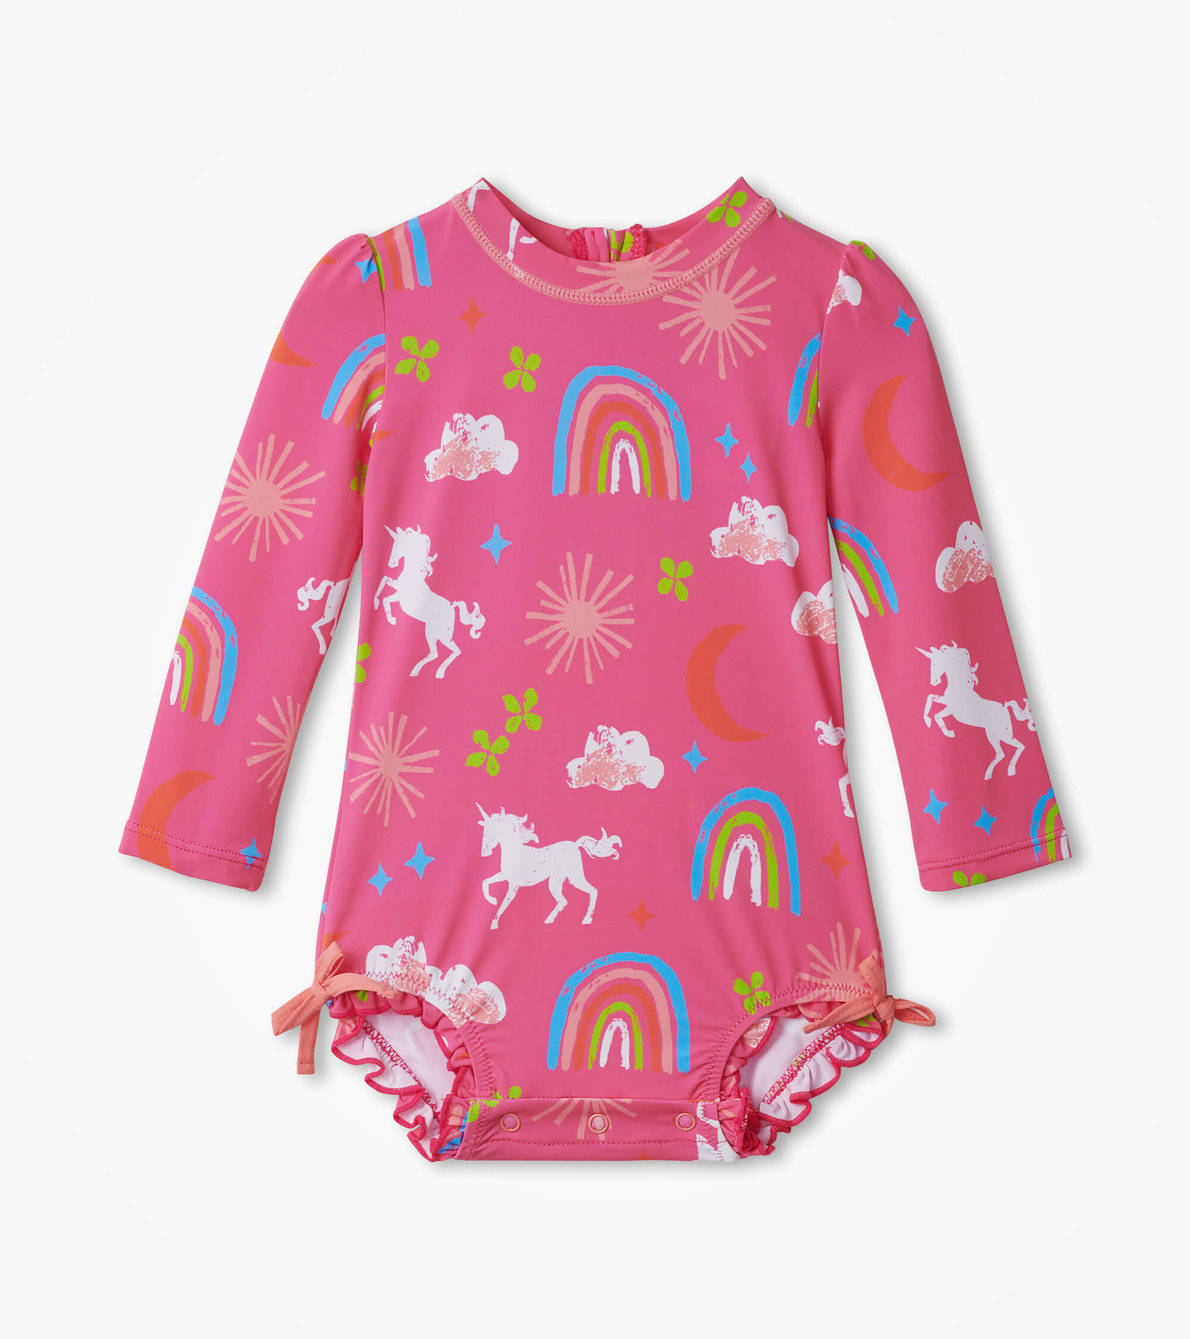 View larger image of Unicorns & Rainbows Baby Rashguard Swimsuit